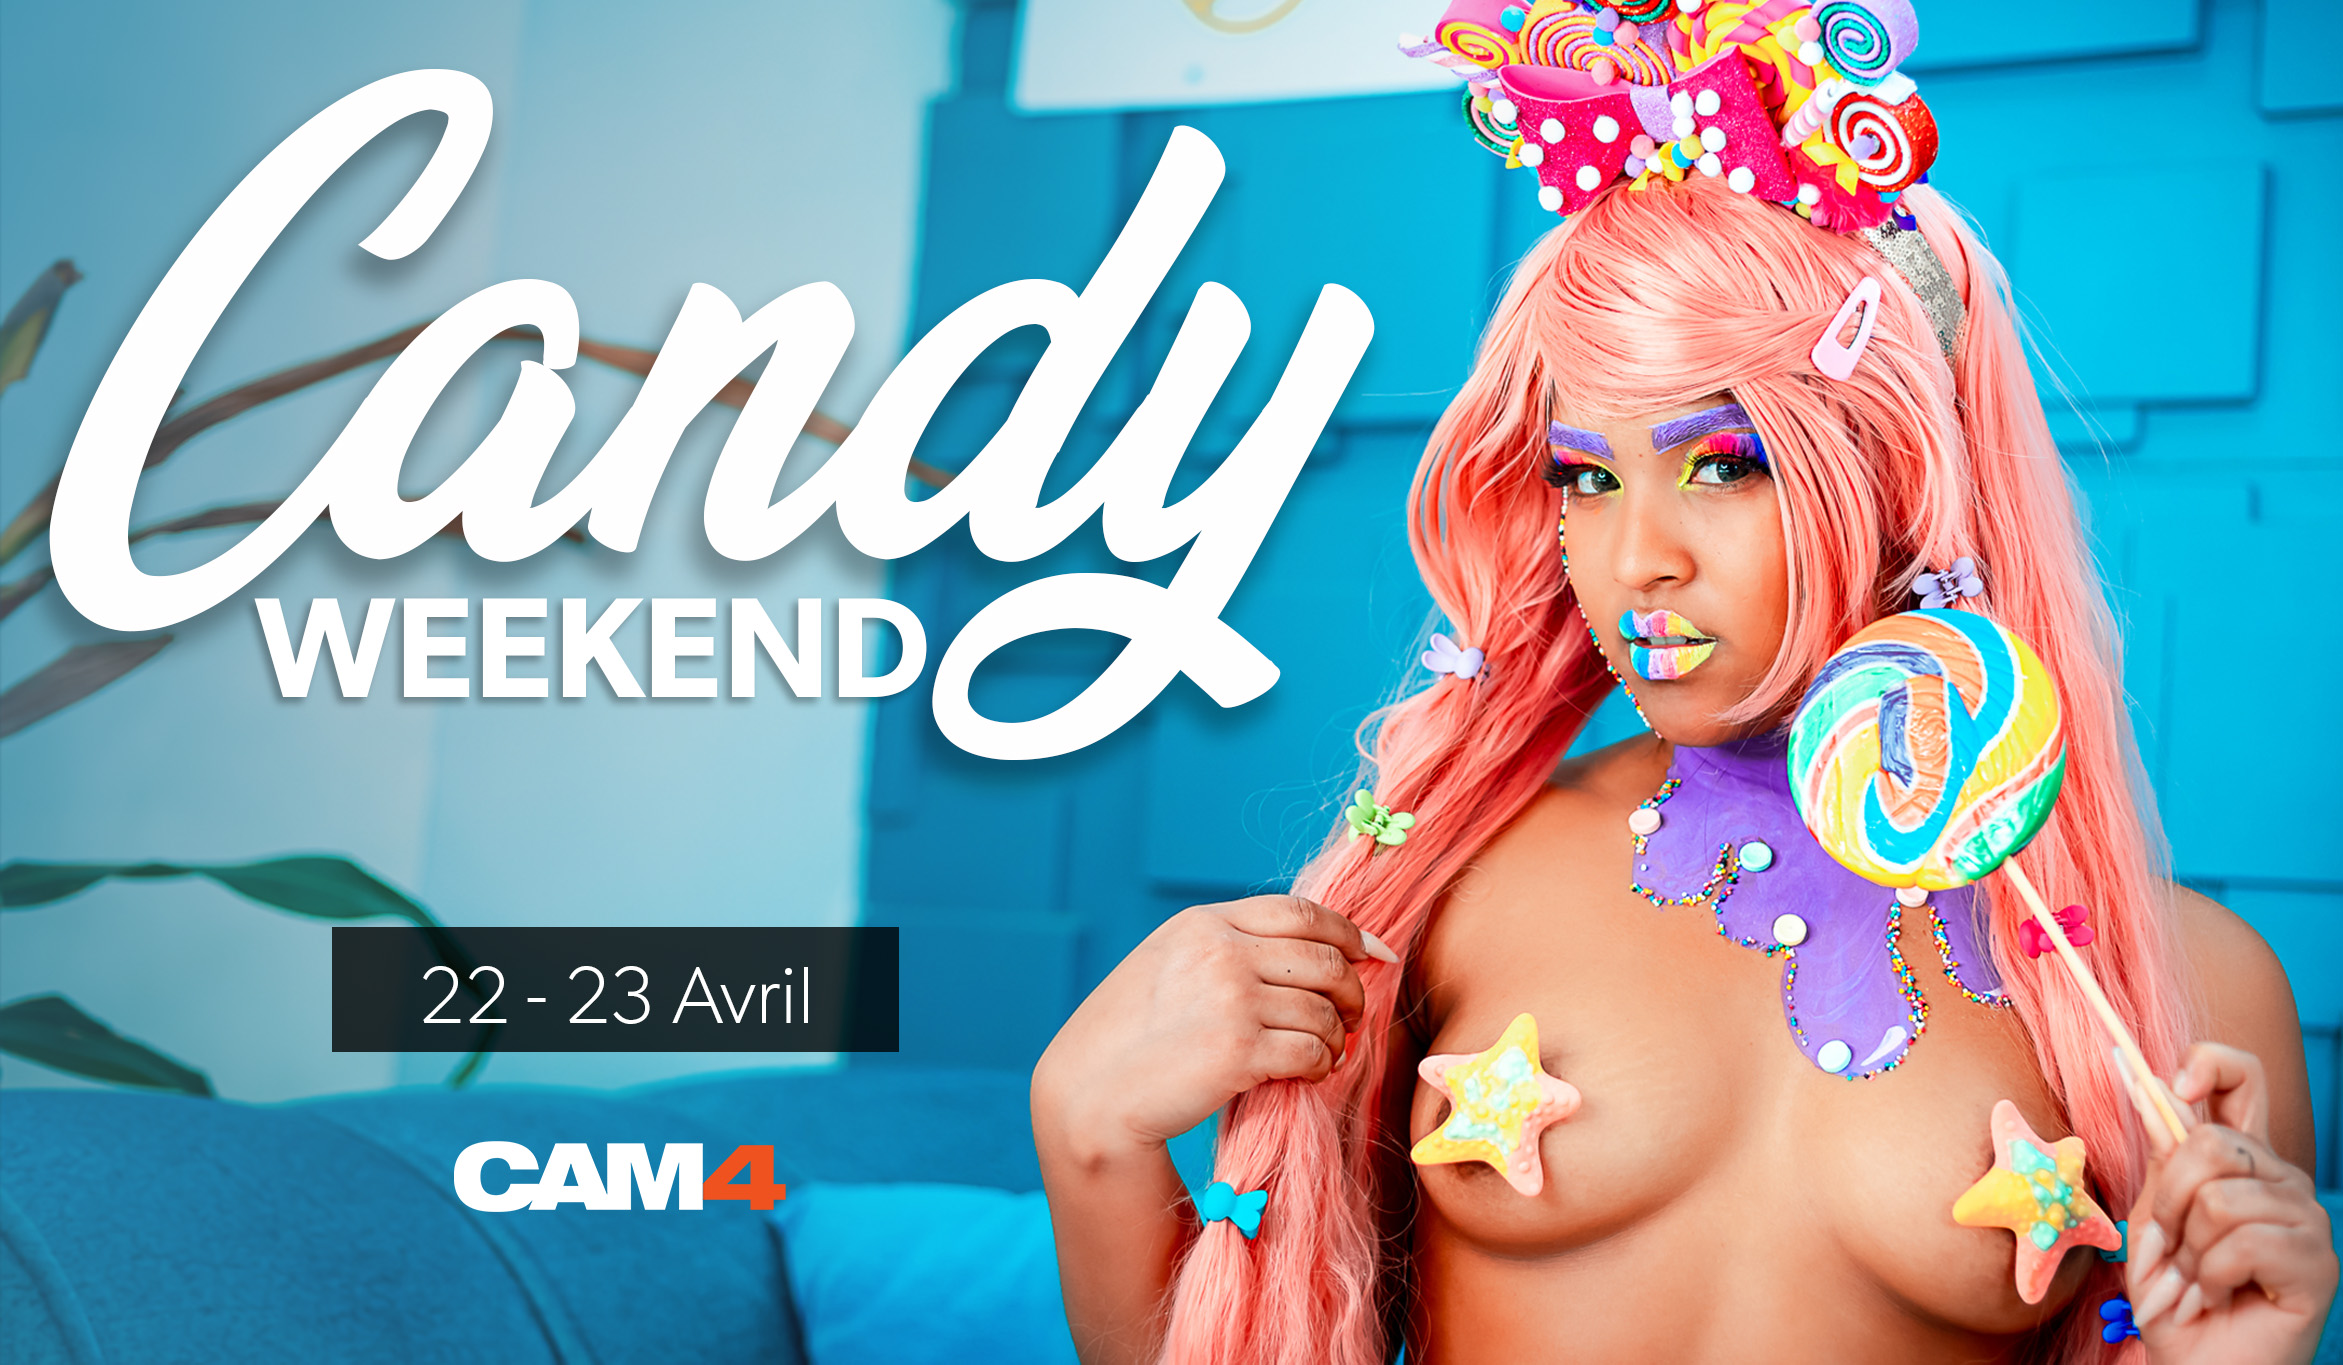 Ne manquez pas le weekend  sucré #SexyCandy de CAM4!